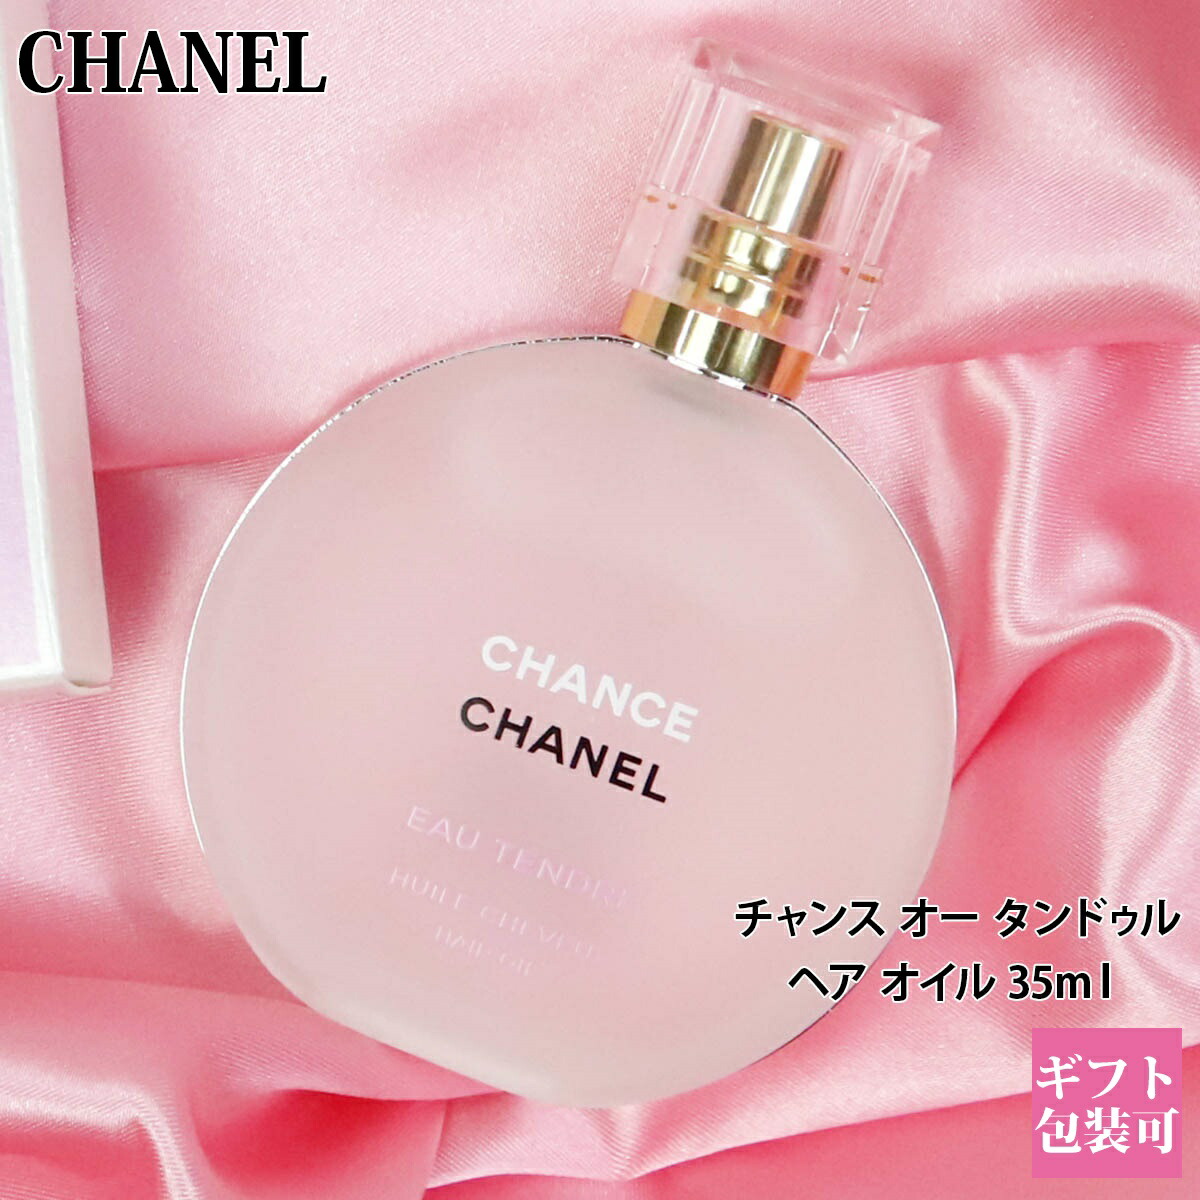 人気商品の シャネル CHANEL ヘアオイル 香水 フレグランス チャンス